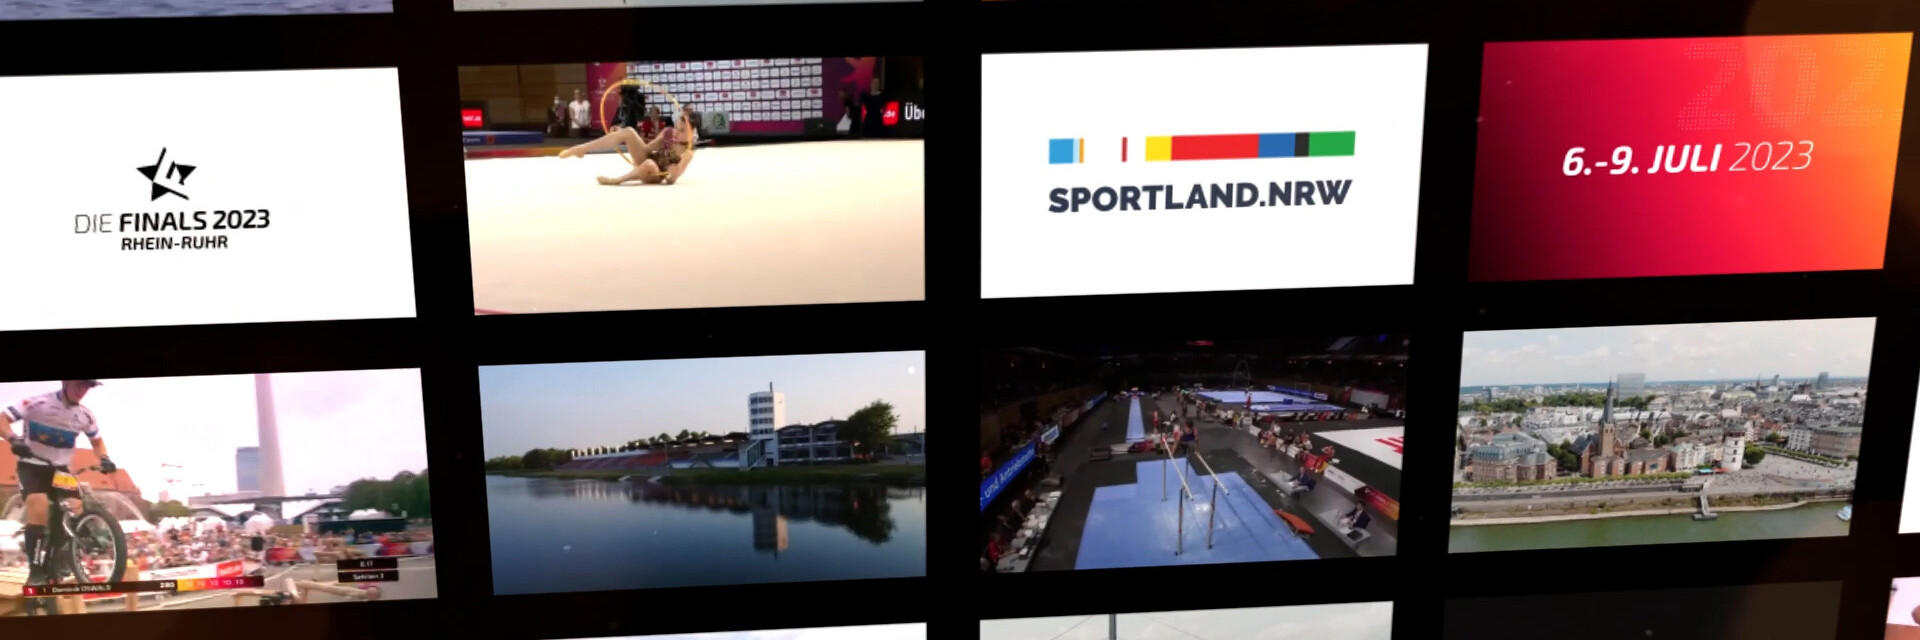 Das Multi-Sportevent der Deutschen Meisterschaften kommt zurück nach Nordrhein-Westfalen